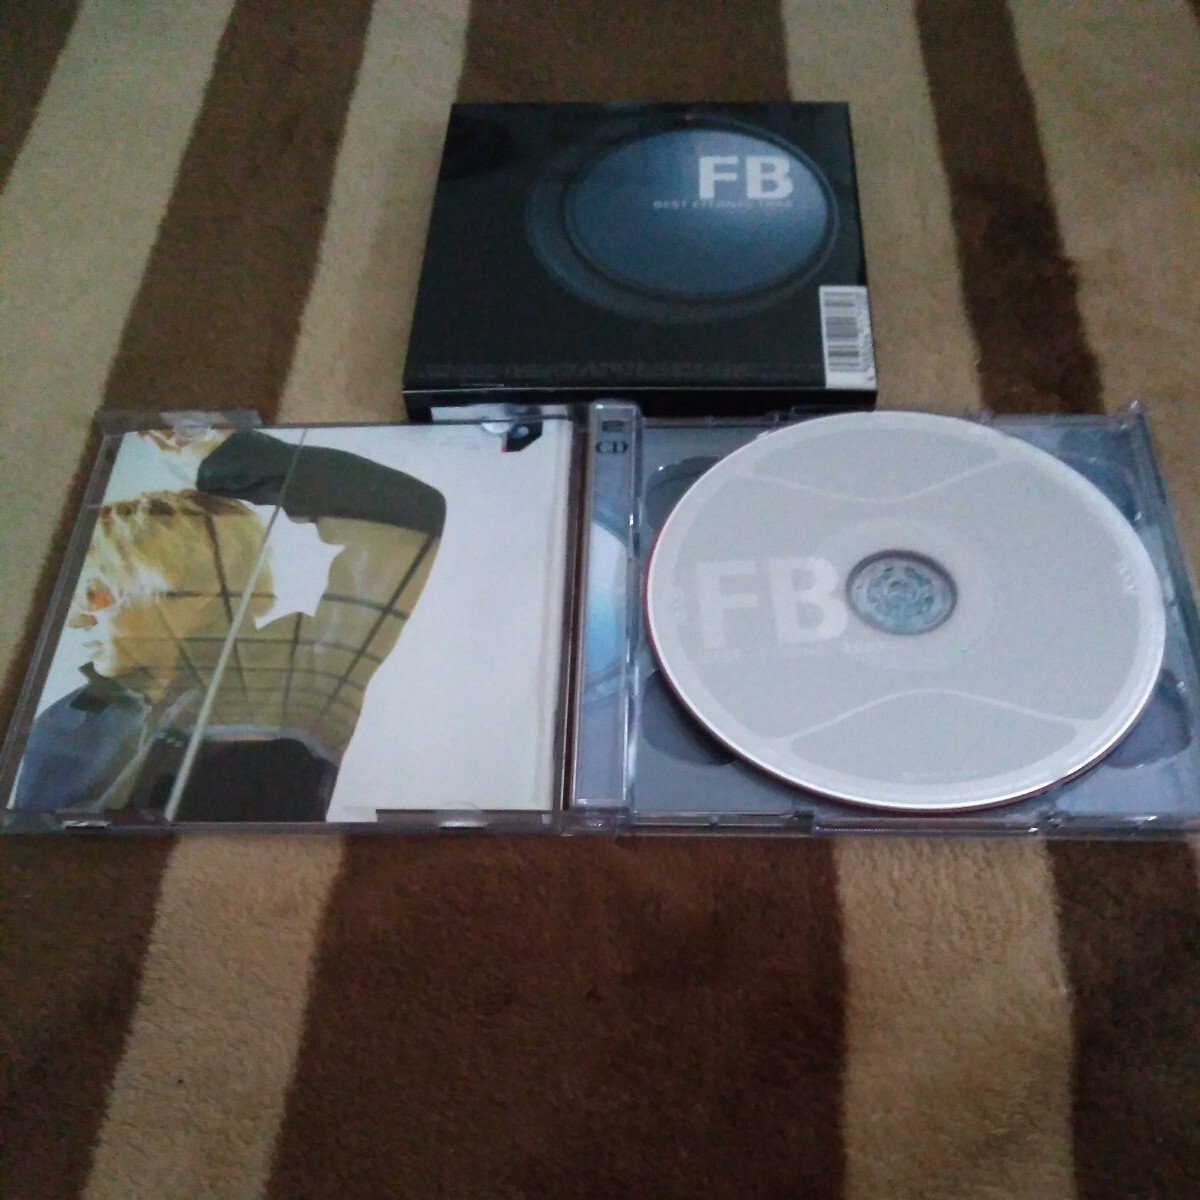 [CD+8 см CD]Favorite Blue FB BEST ETERNAL TRAX CD лучший альбом fei шероховатость to голубой первый раз ограничение запись лучший 